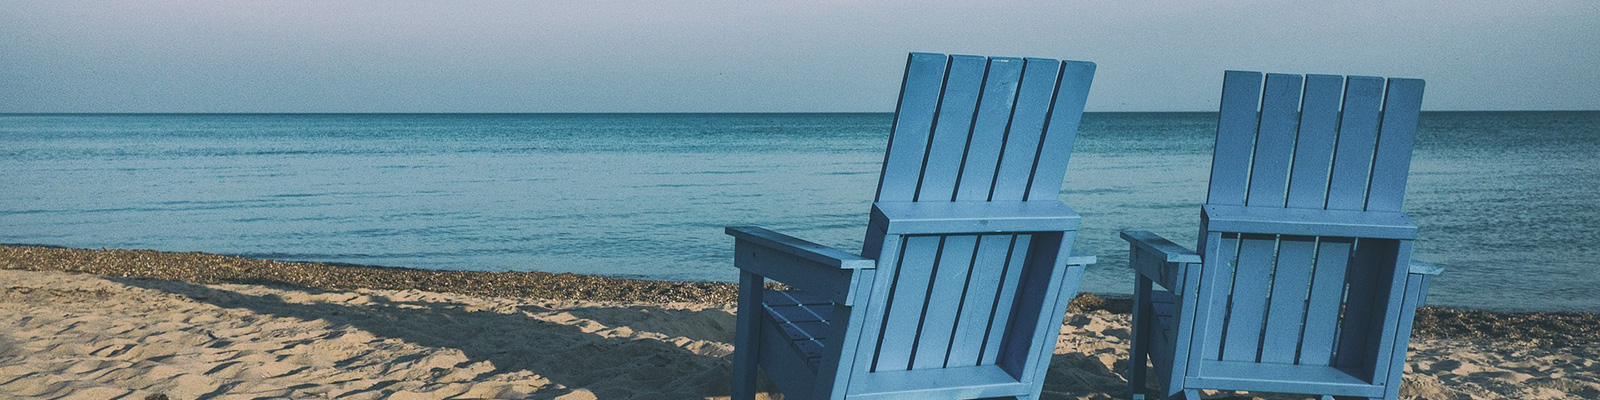 Adirondack chairs on beach